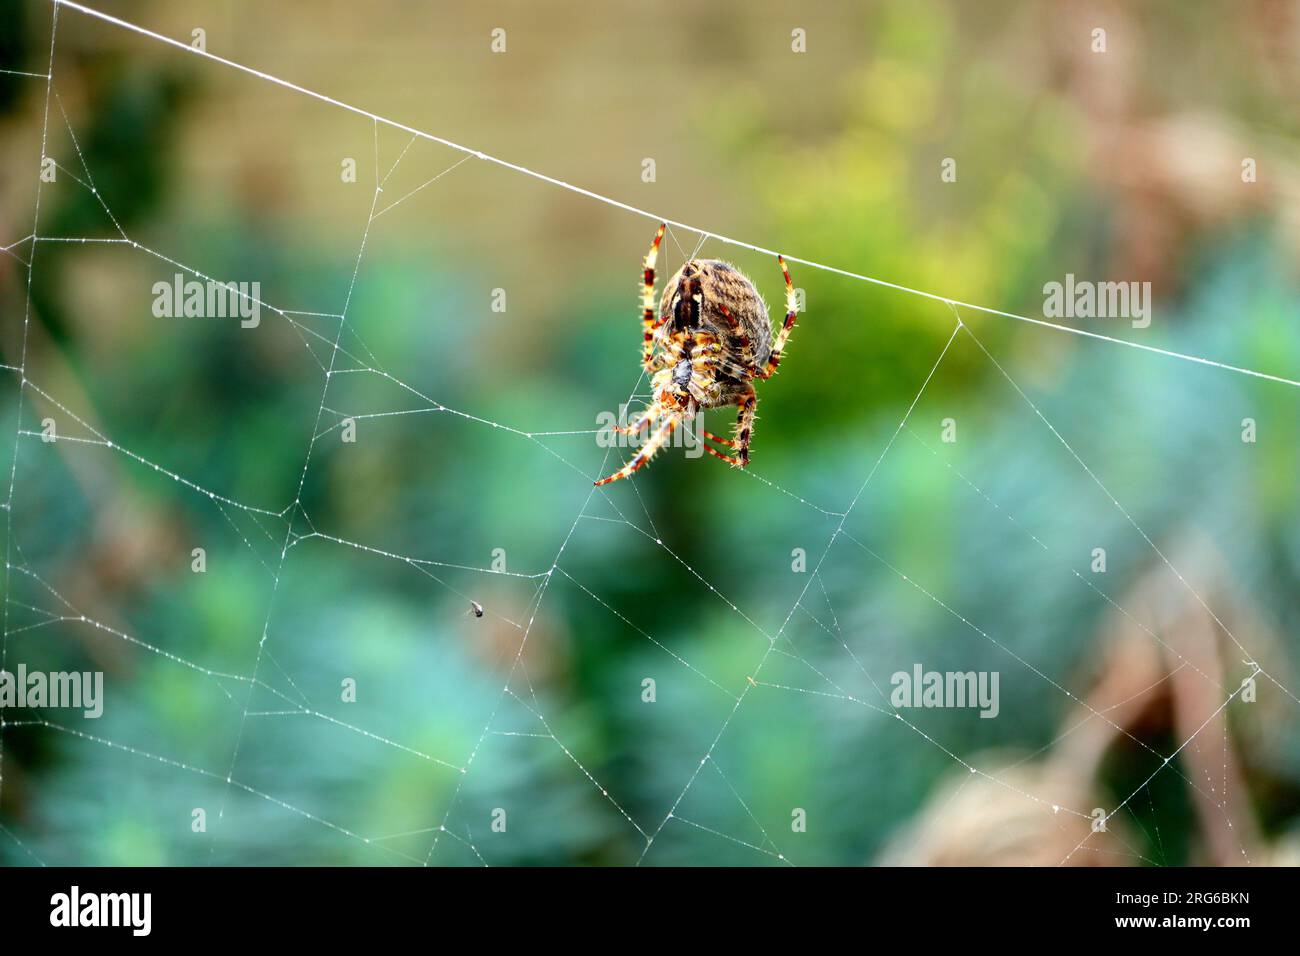 Europäische Gartenspinne mit gestreiften Beinen. Nahaufnahme, Makrofoto der Spinne auf einem Netz, Details zu haarigen Beinen und der Unterseite des Körpers. Stockfoto